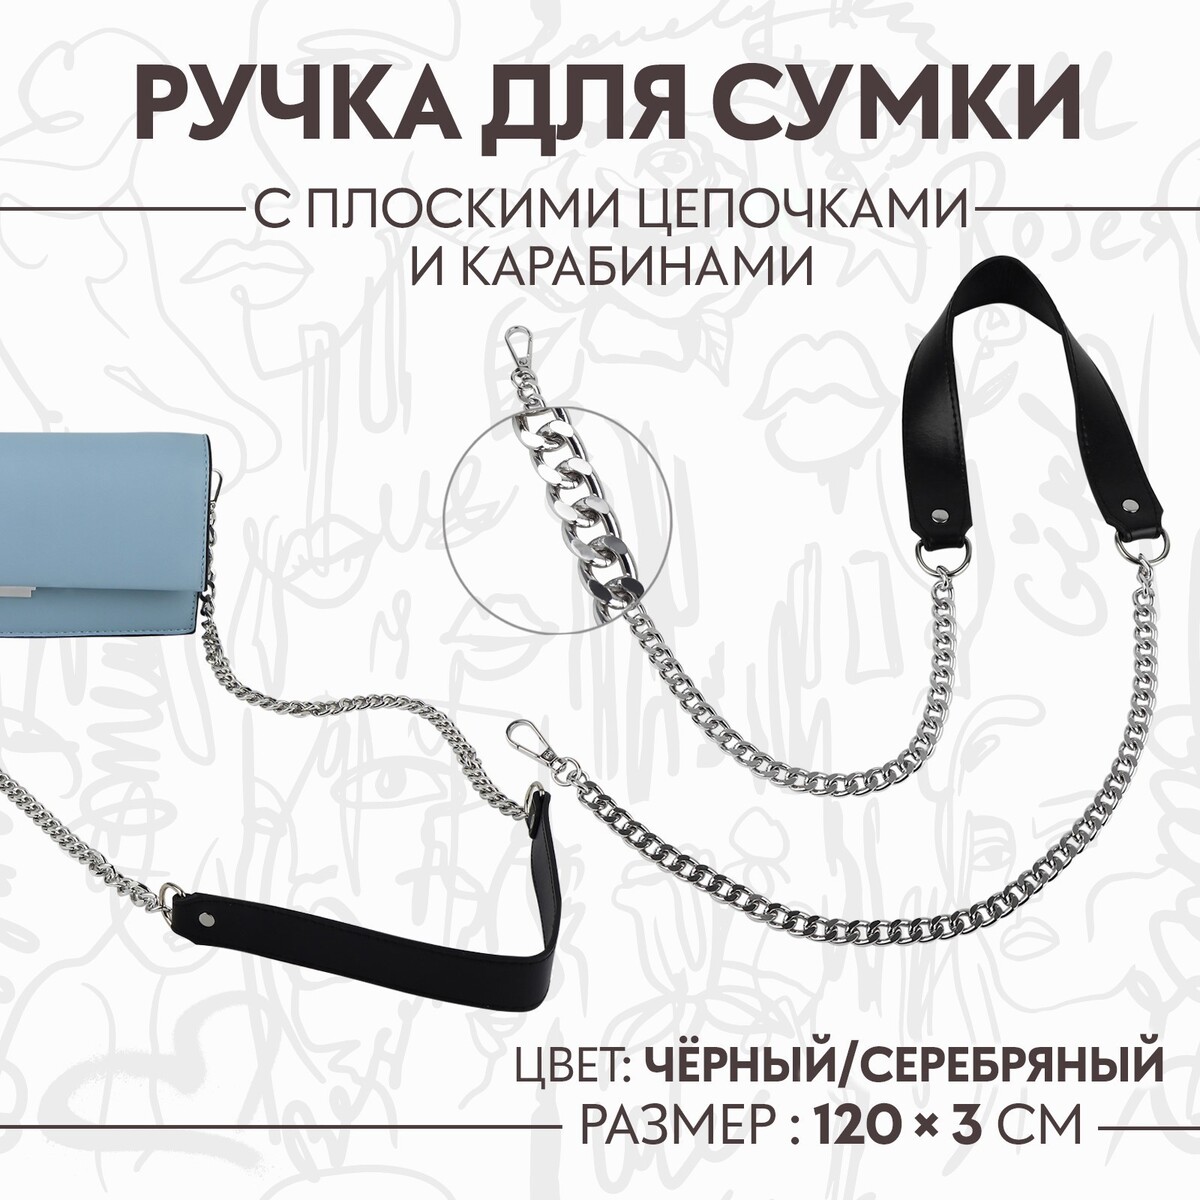 Ручка для сумки, с плоскими цепочками и карабинами, 120 × 3 см, цвет черный/серебряный ручка для сумки бамбук с цепочками и карабинами 60 см золотой